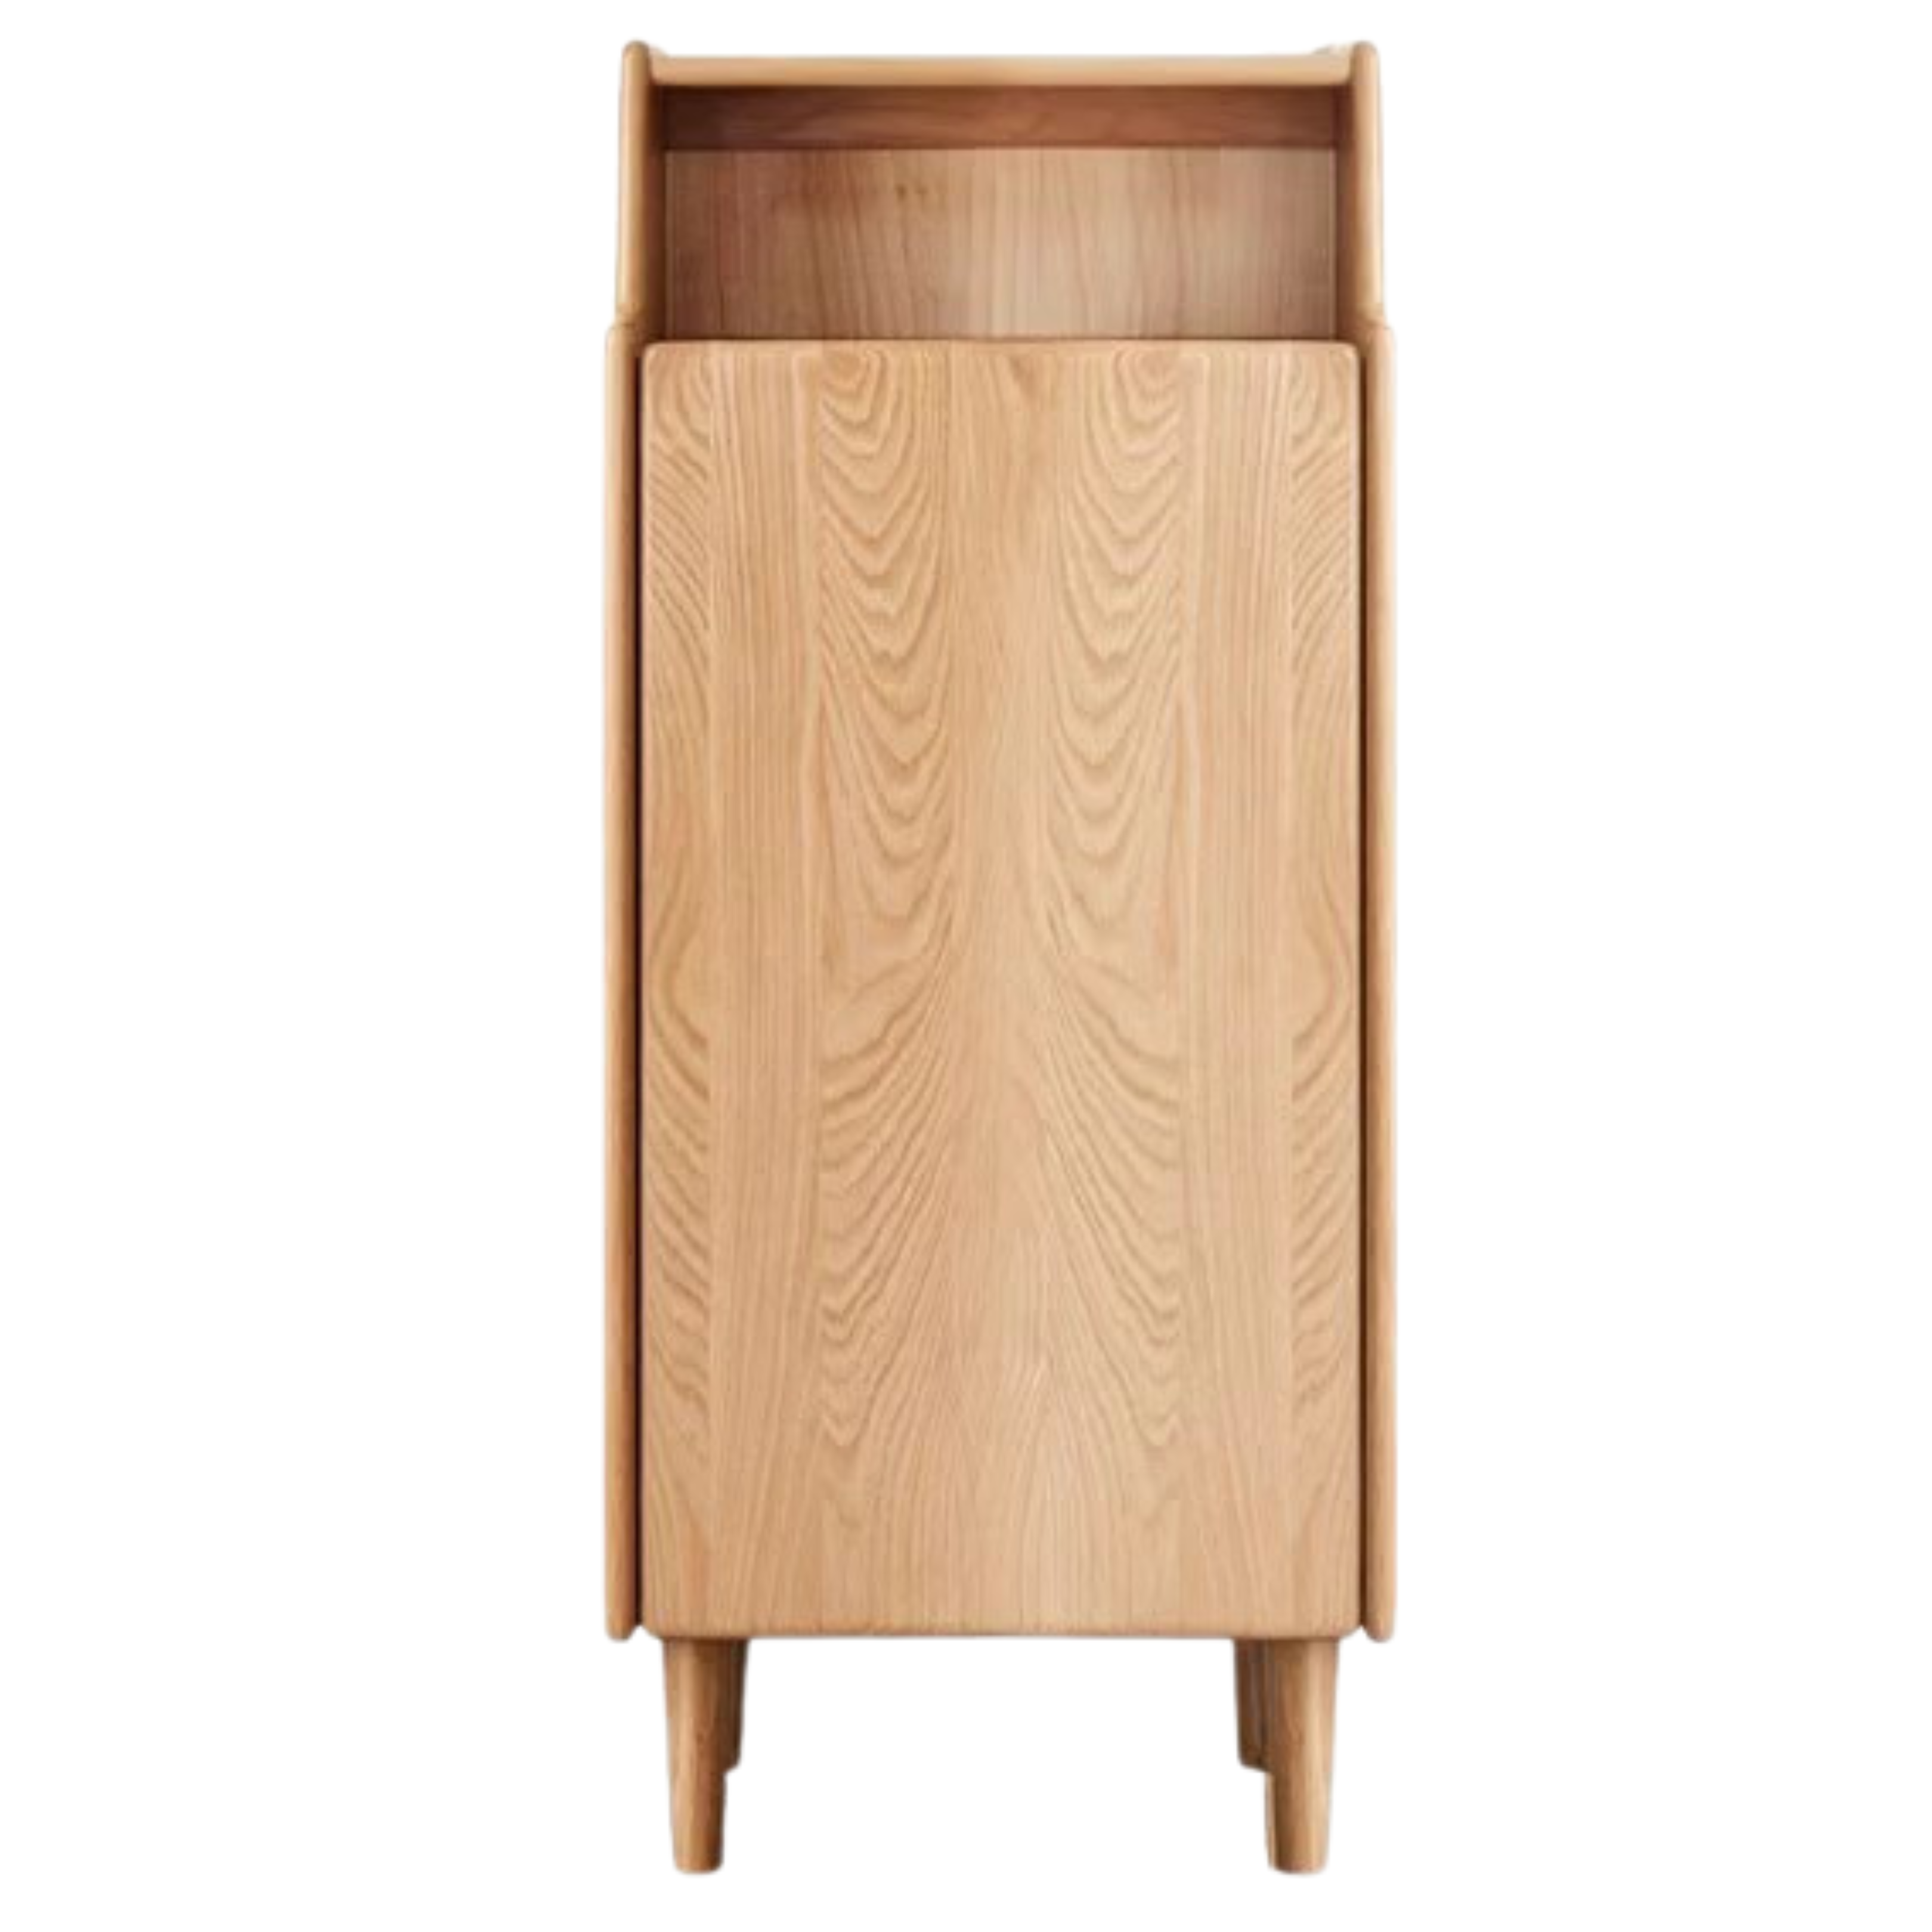 Oak solid wood Shoe cabinet